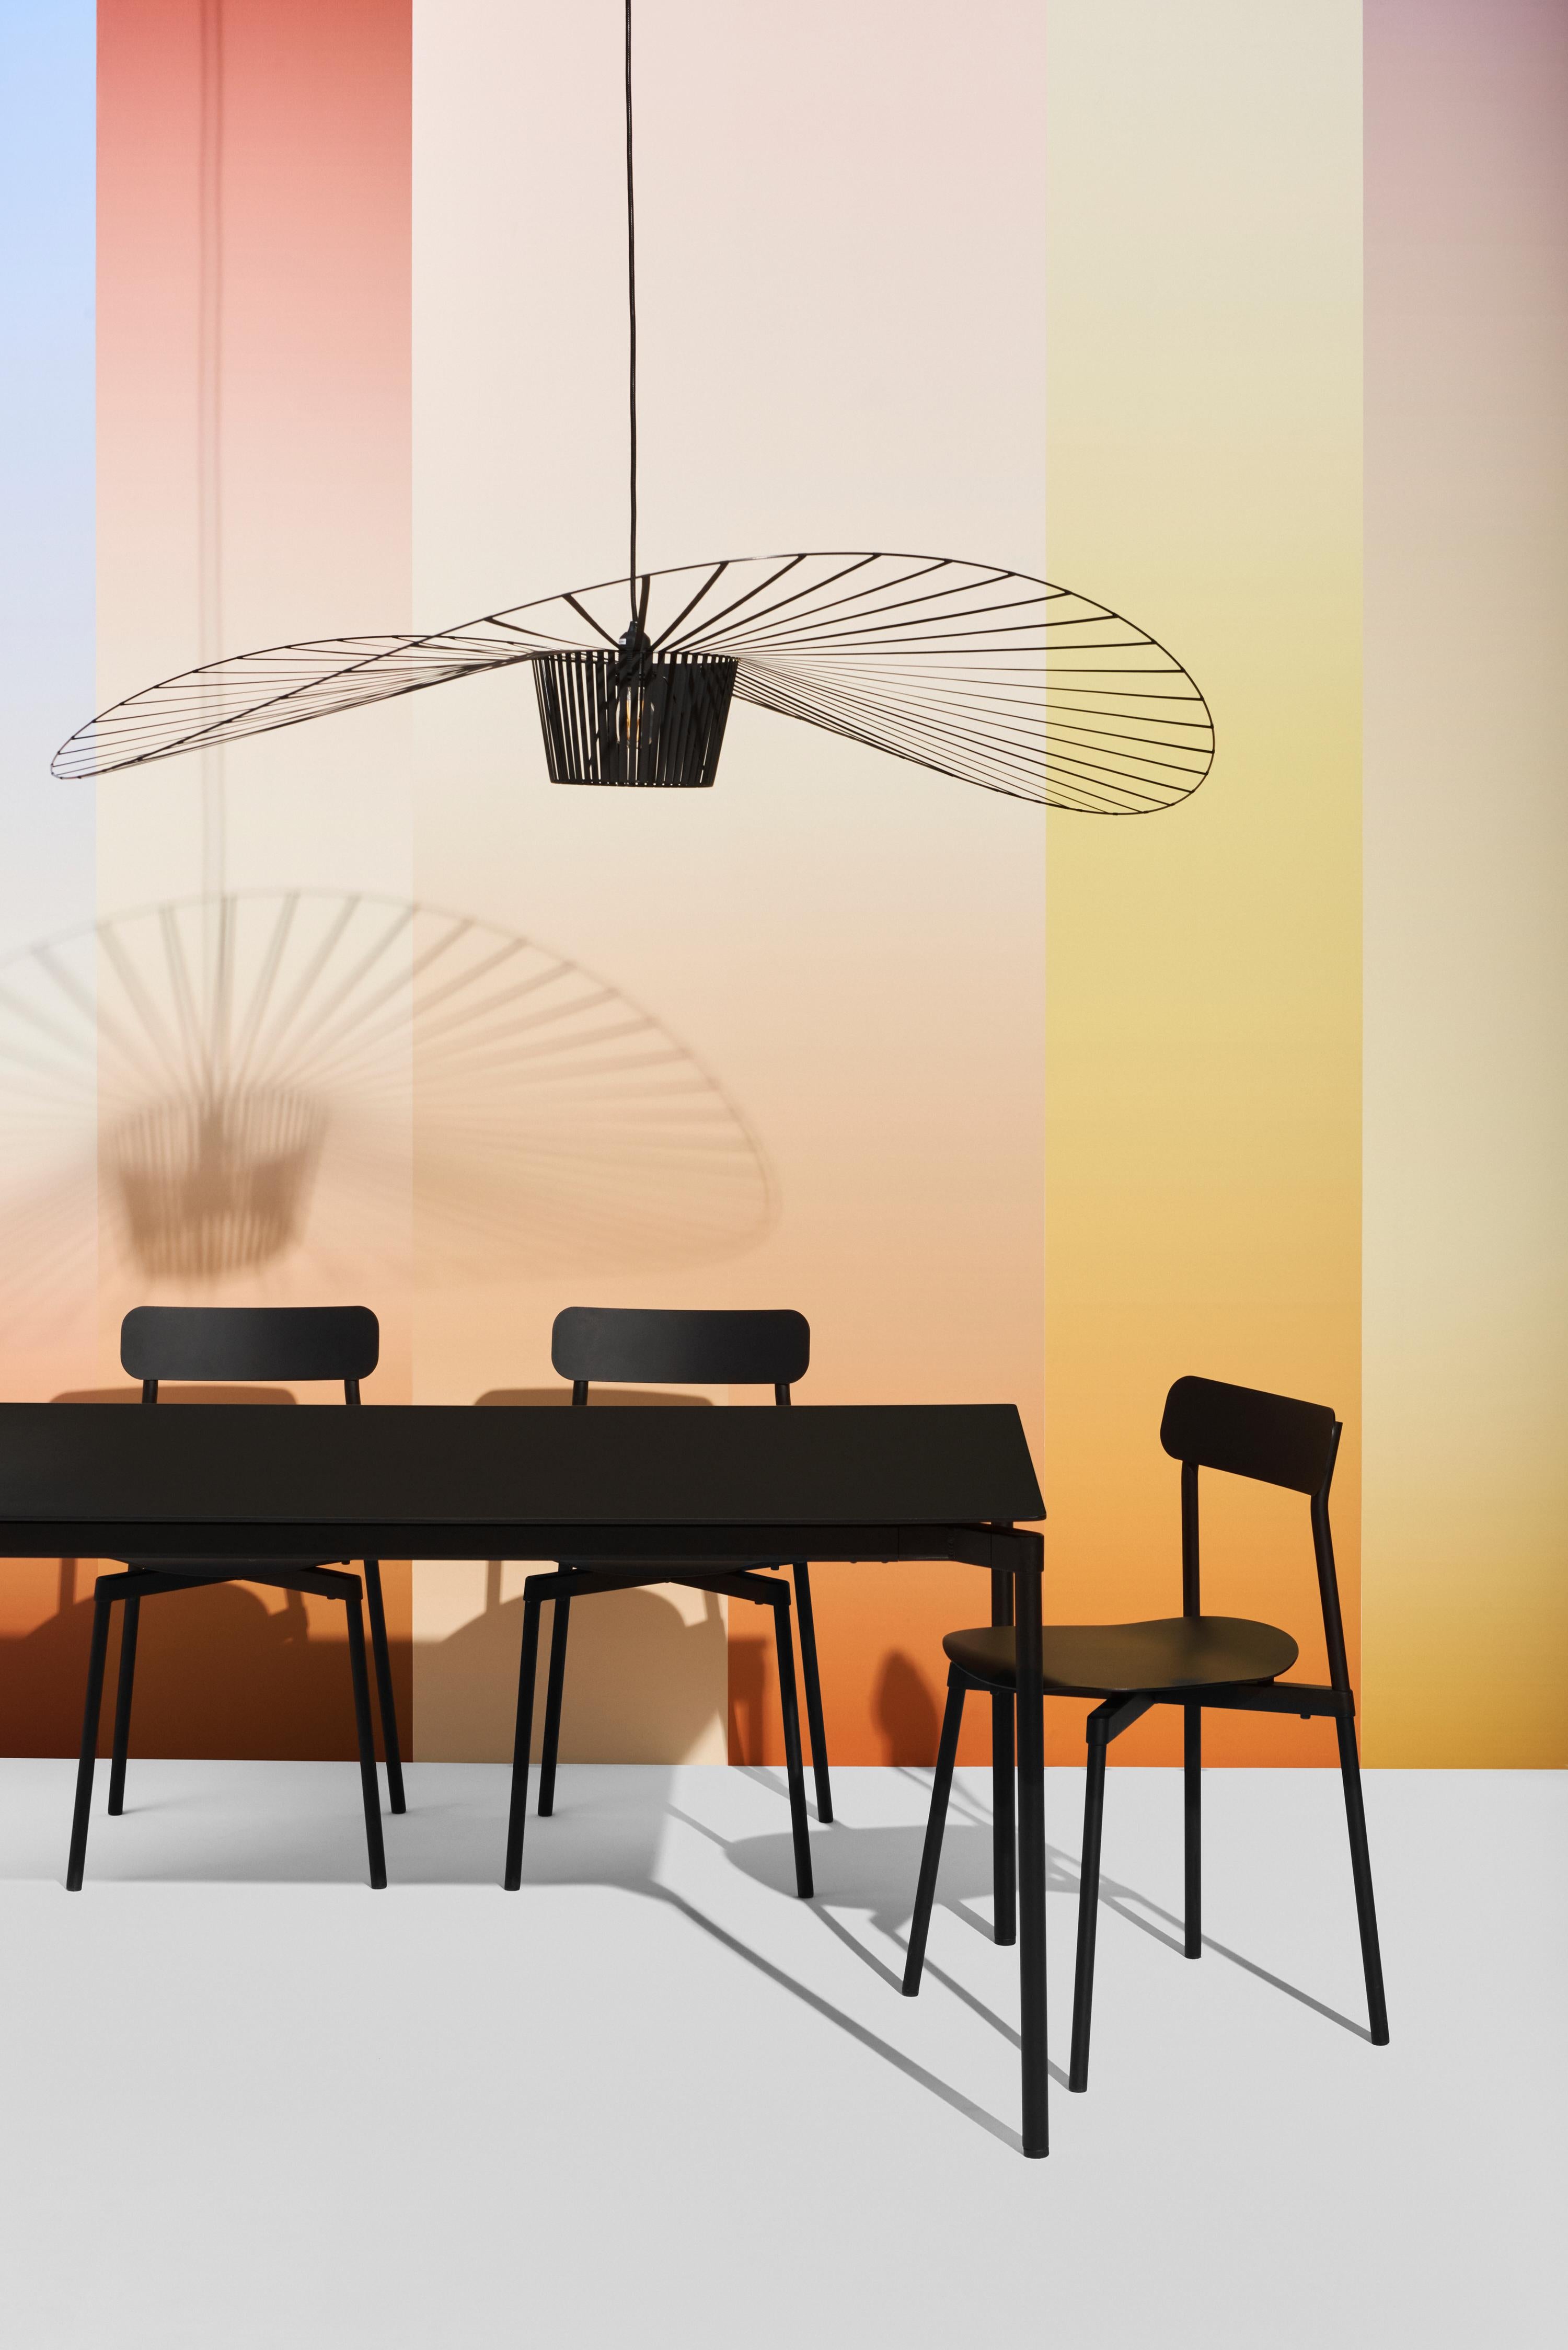 La lampe suspendue Vertigo est une icône de Petite Friture. Créée par la designer Constance Guisset, elle a suscité l'enthousiasme des professionnels du design. Reconnu très tôt par Rossana Orlandi, ce grand lustre design a intégré un florilège de